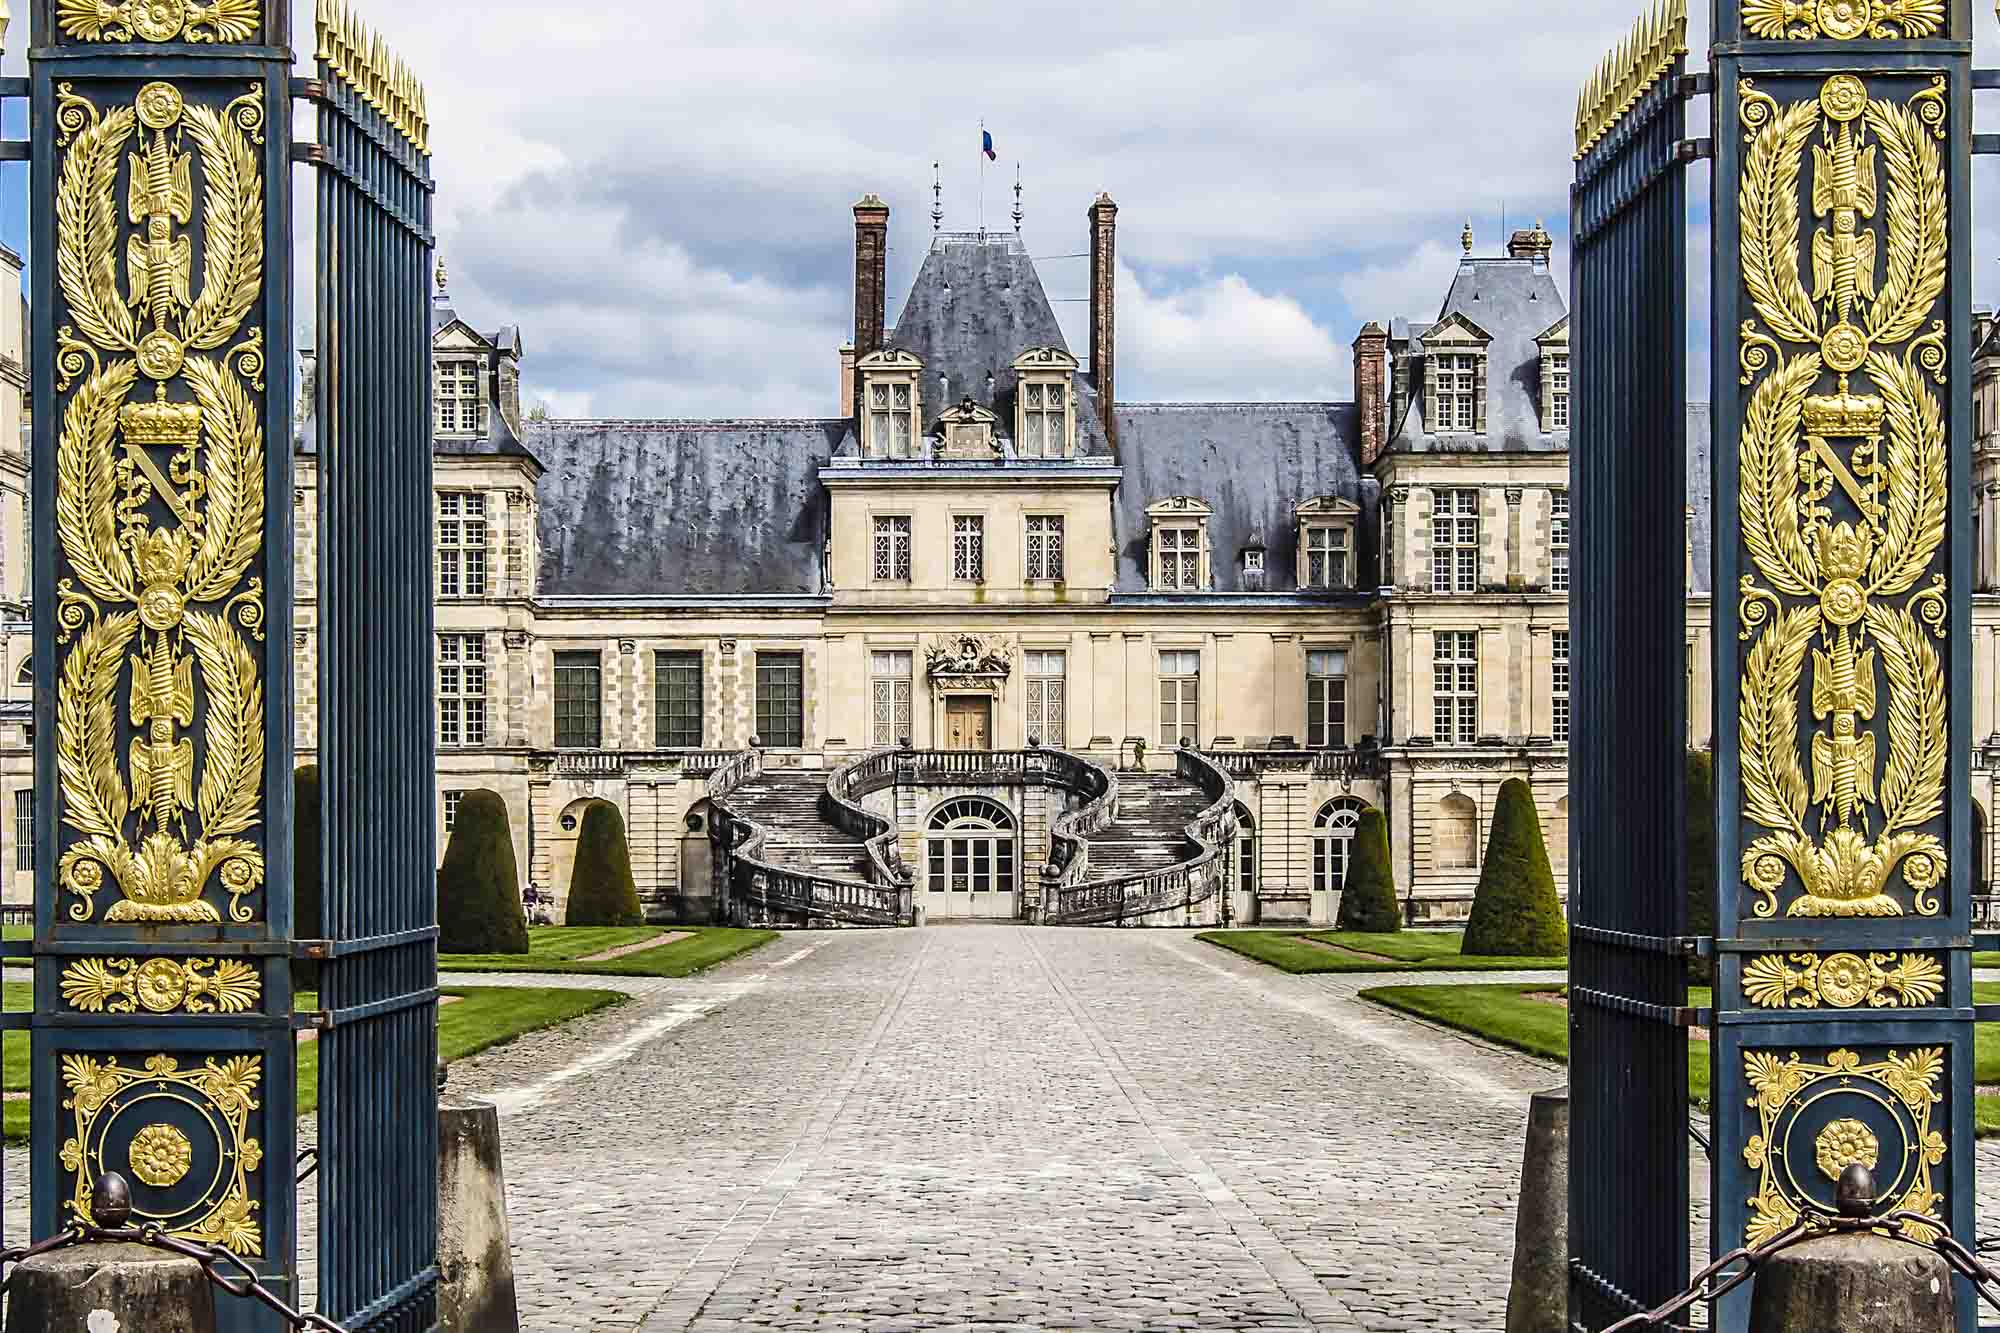 The entrance gates to the Chateau de Fontainebleau